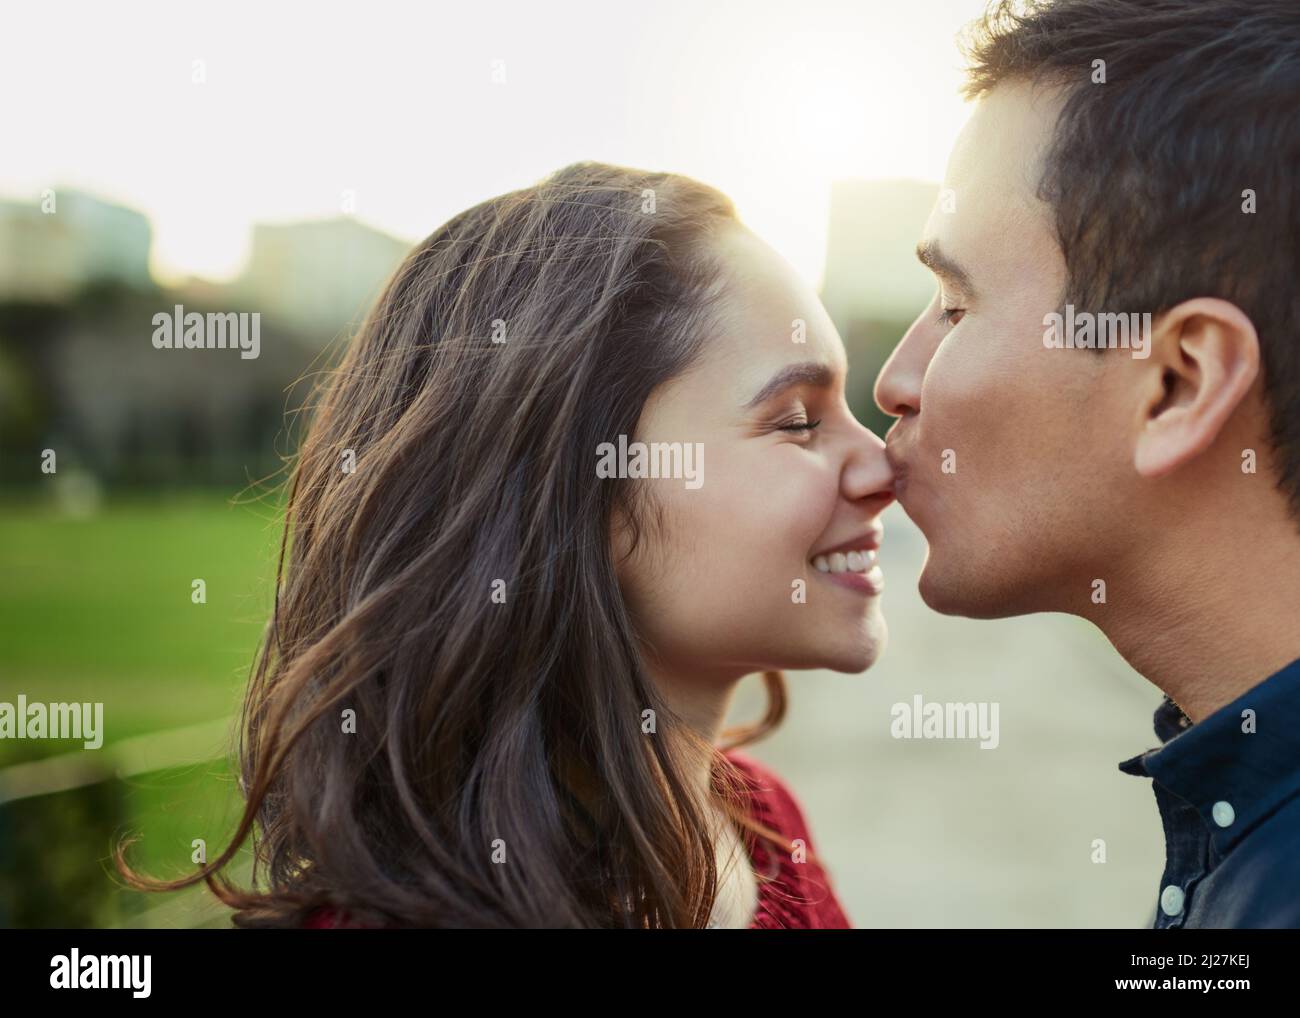 Amore, niente altro necessario. Scatto di un giovane che bacia la sua ragazza sul naso all'aperto. Foto Stock